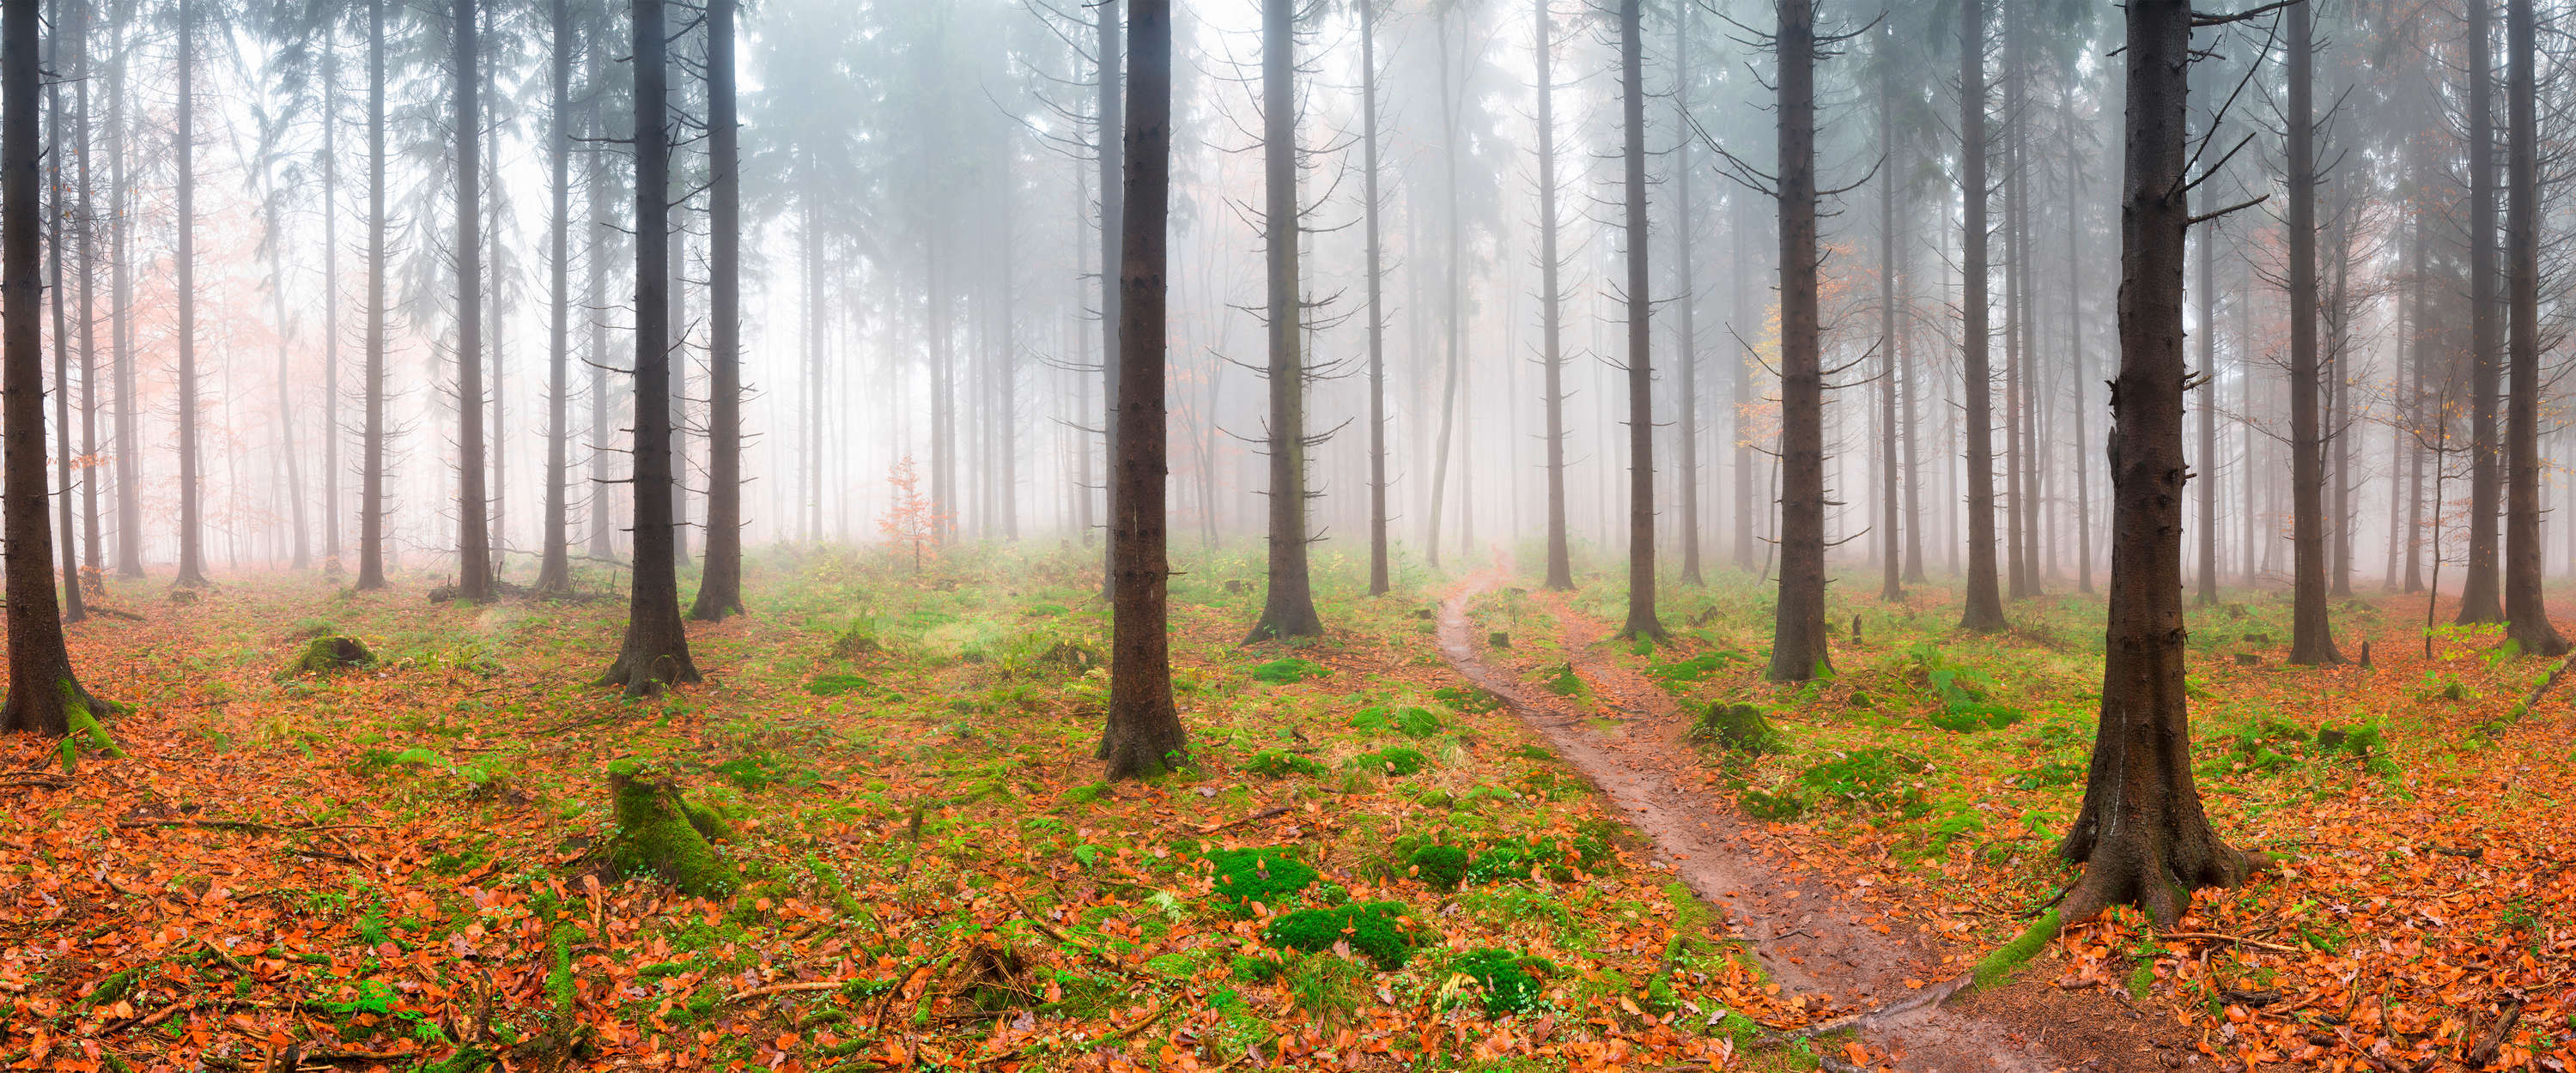             Papel pintado del bosque Abetos en la niebla y camino de senderismo
        